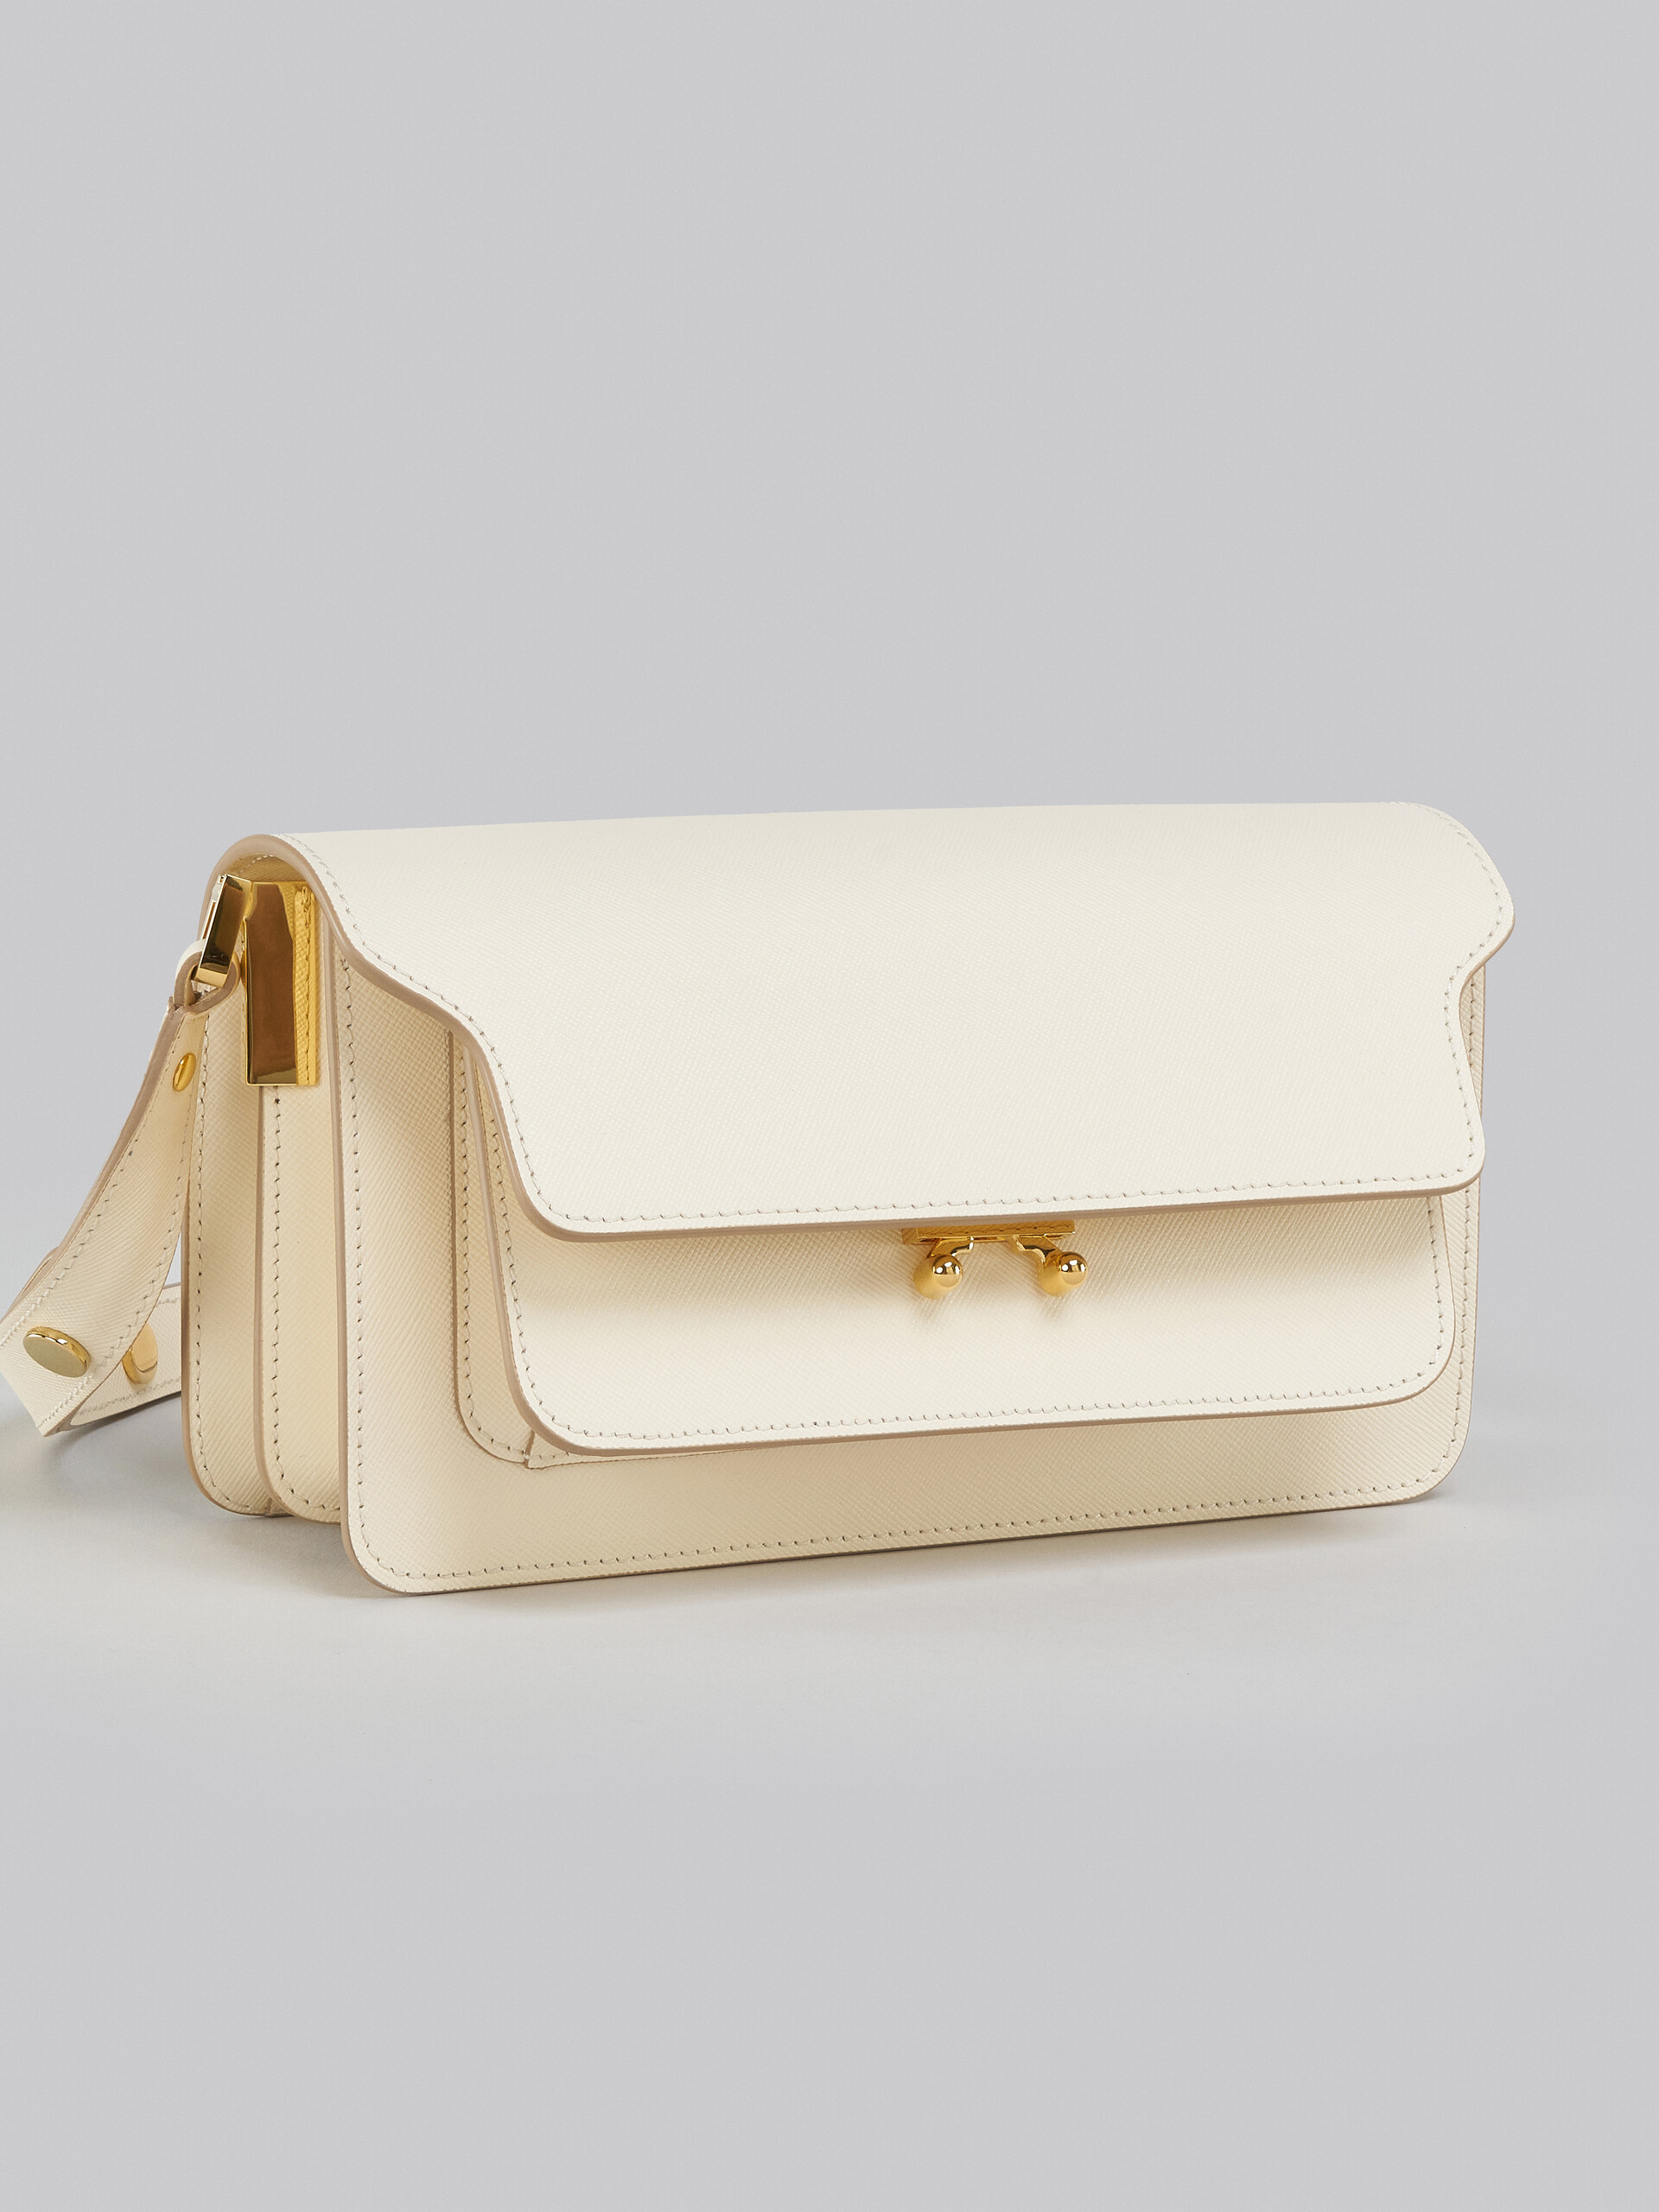 Trunk Bag E/W in pelle saffiano bianca - Borse a spalla - Image 5